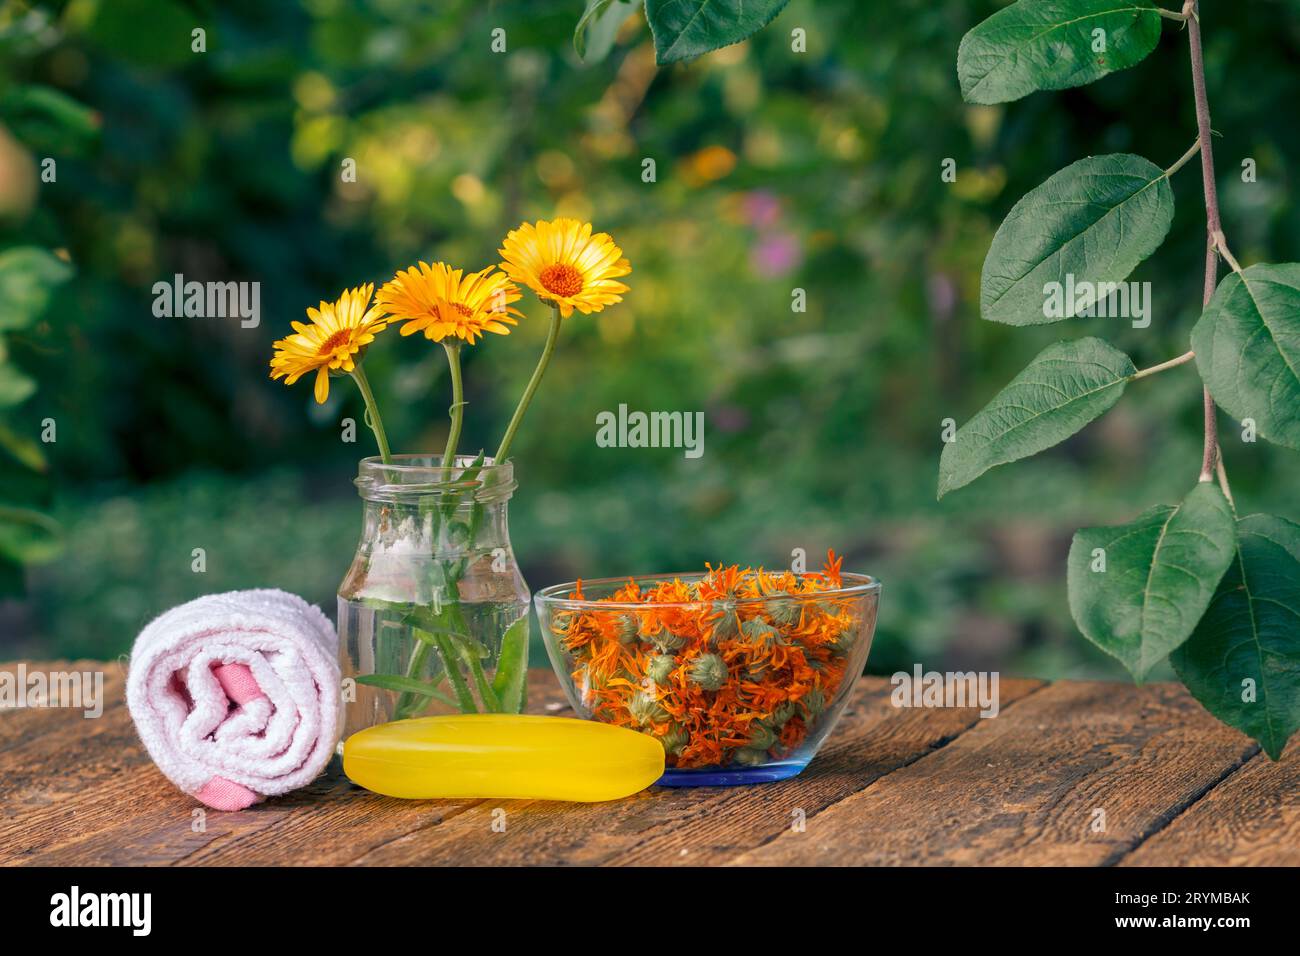 Seife mit Ringelblumenextrakt, einem Handtuch, Ringelblumen in einem Glas und einer Schüssel. Stockfoto